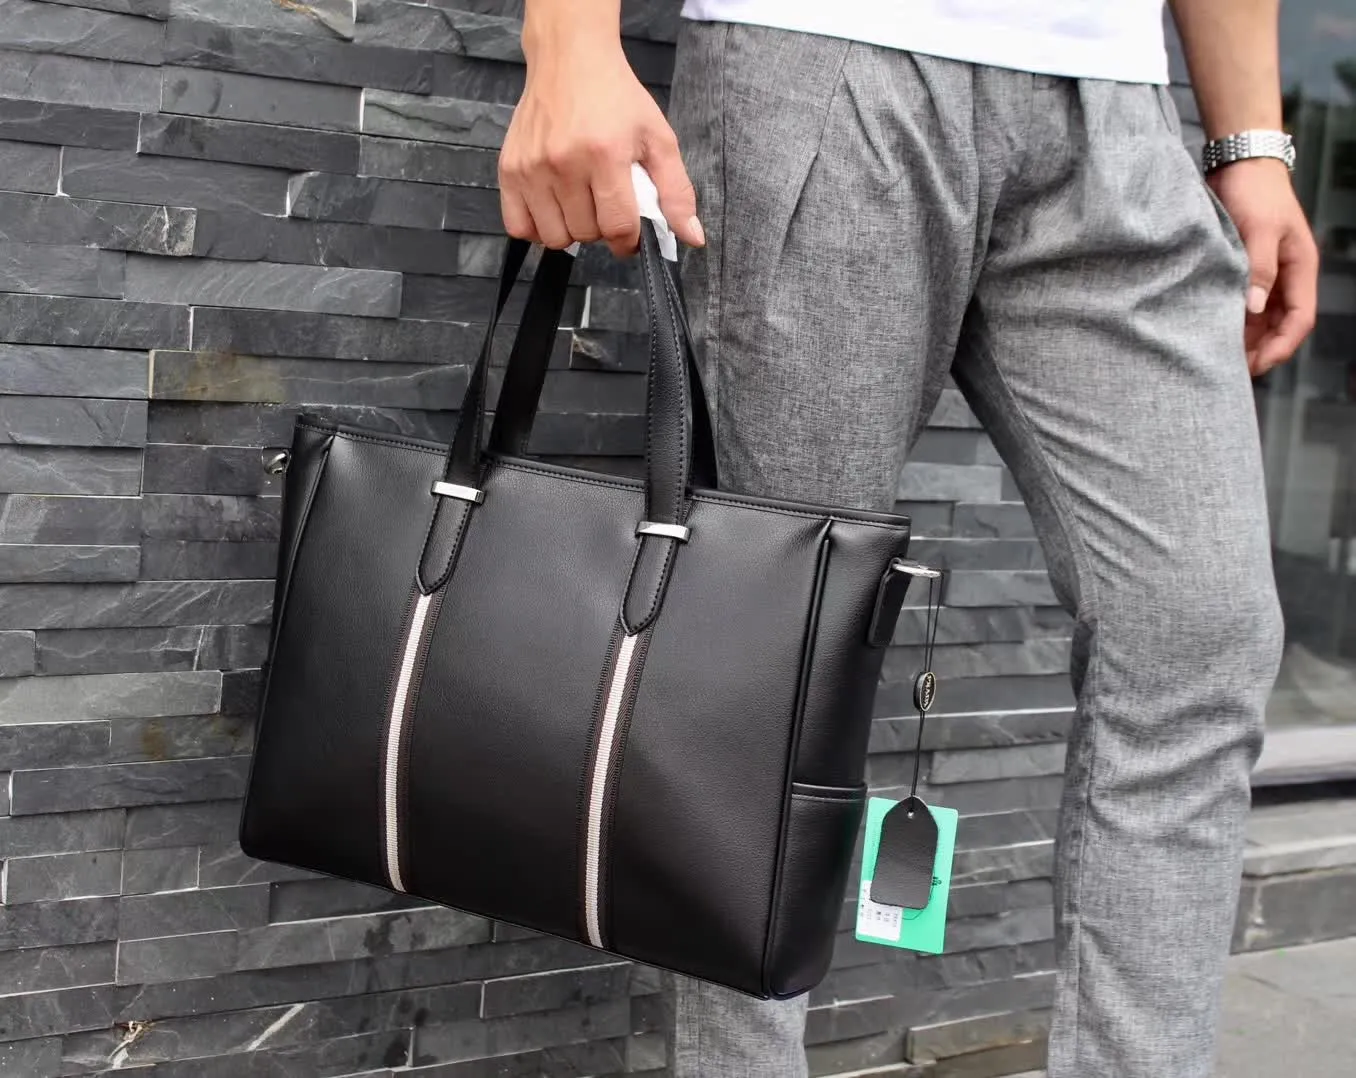 2019 جديد مصمم رجال الأعمال حقائب جلد طبيعي رجل حقيبة كمبيوتر qaulity عالية رسول حقيبة مصمم حقيبة كبيرة الحجم حقيبة الكتف